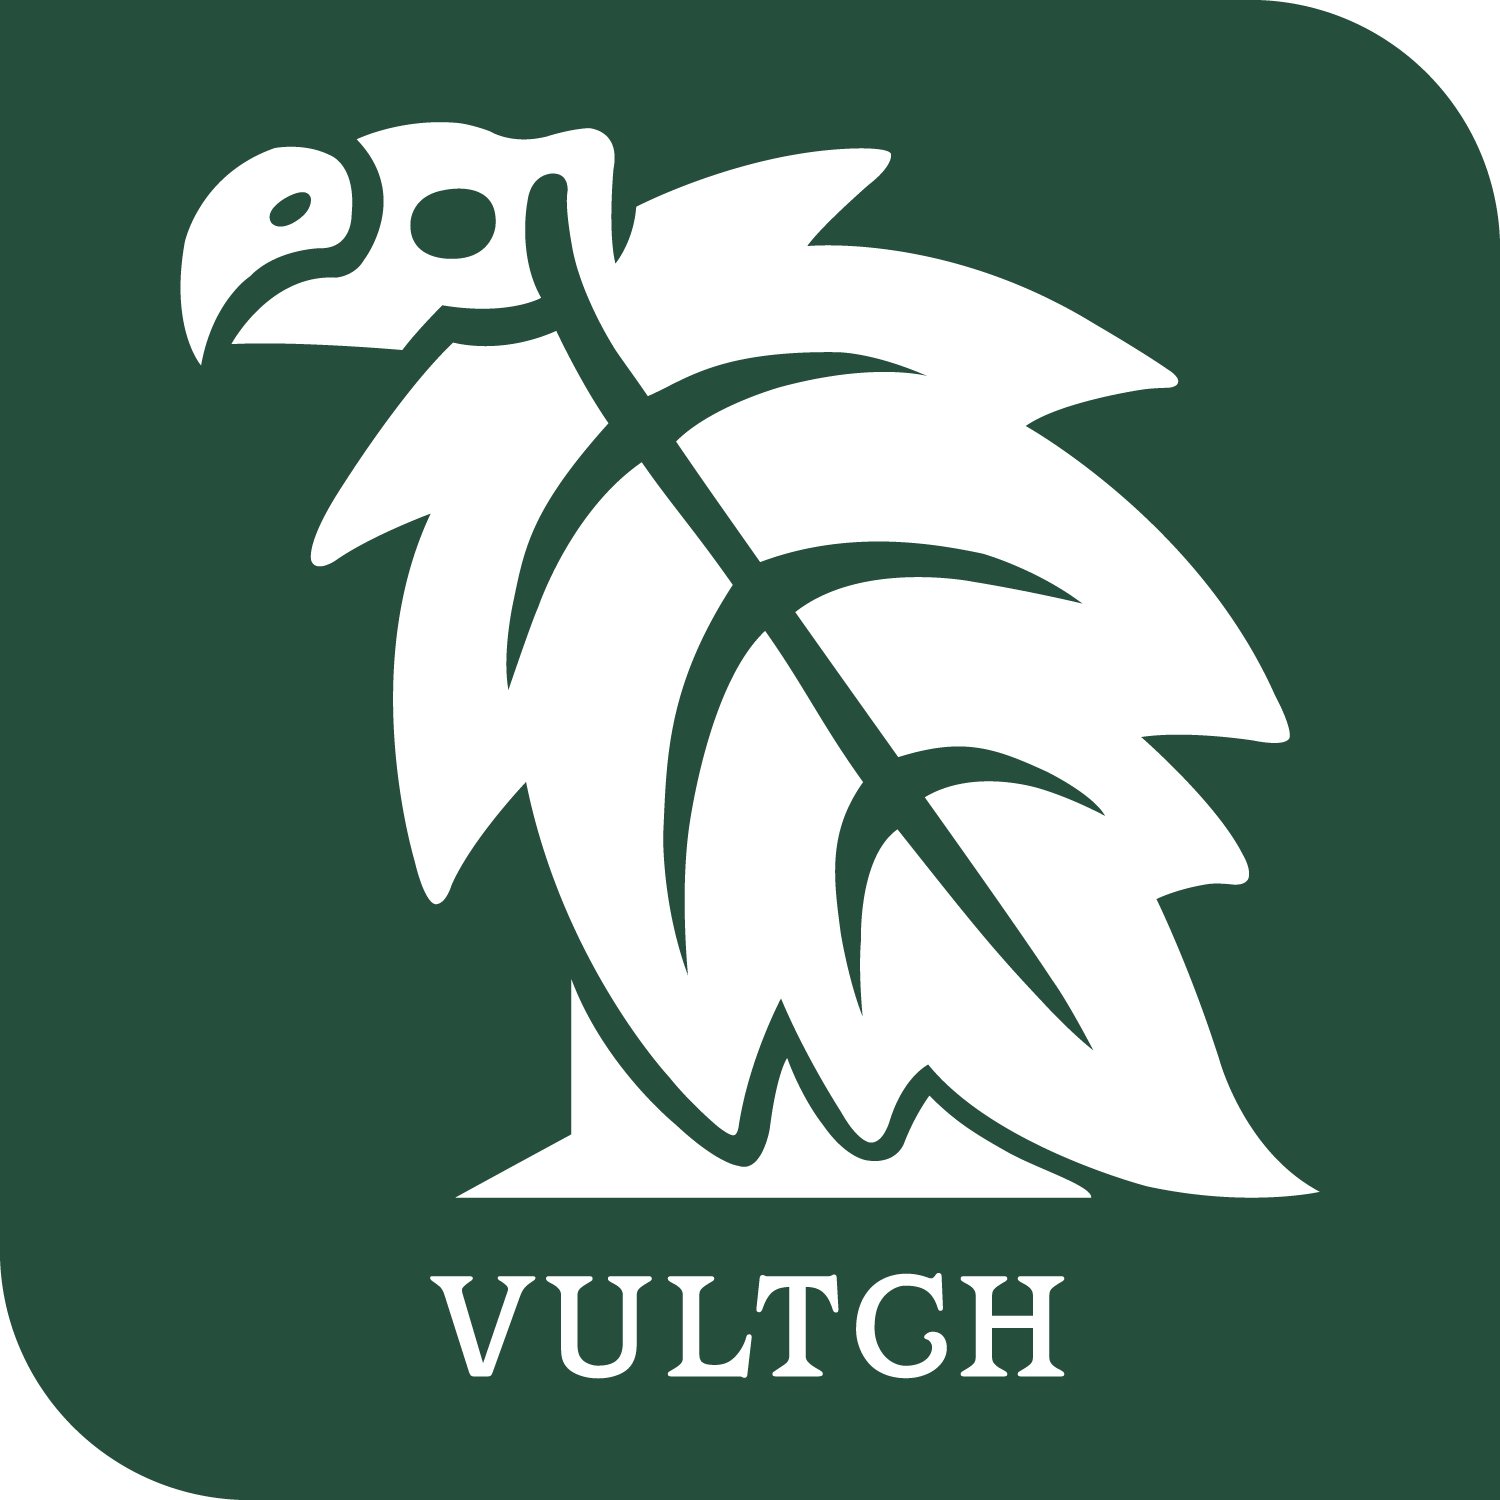 Vultch logo